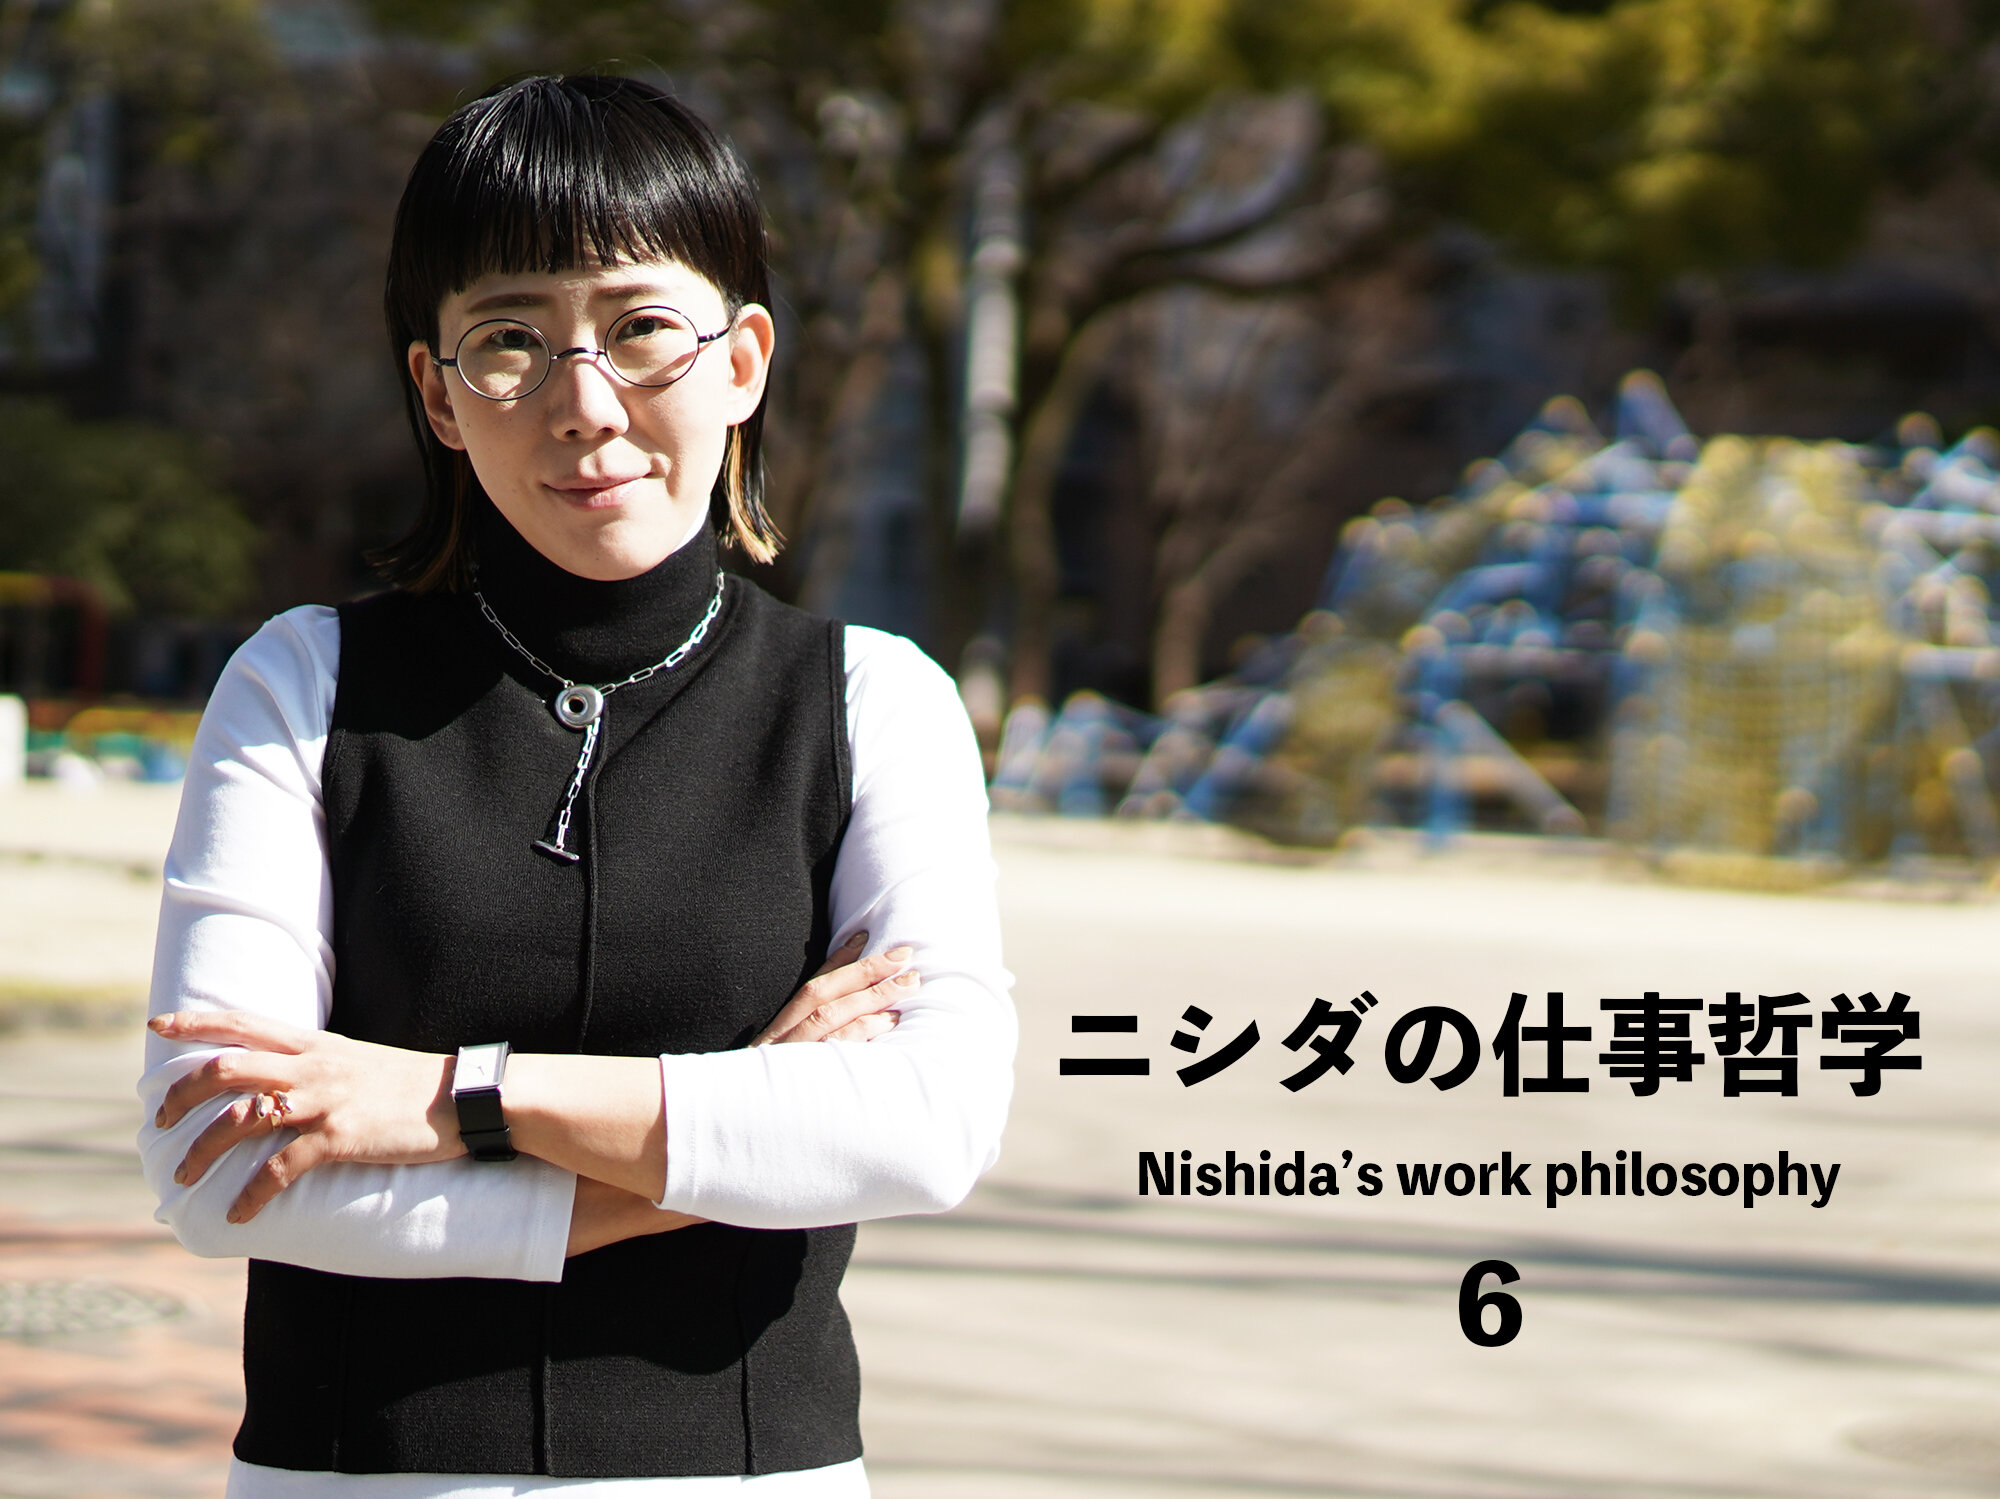 あなたにとって「仕事」とは。ー１分で読めるニシダの仕事哲学―